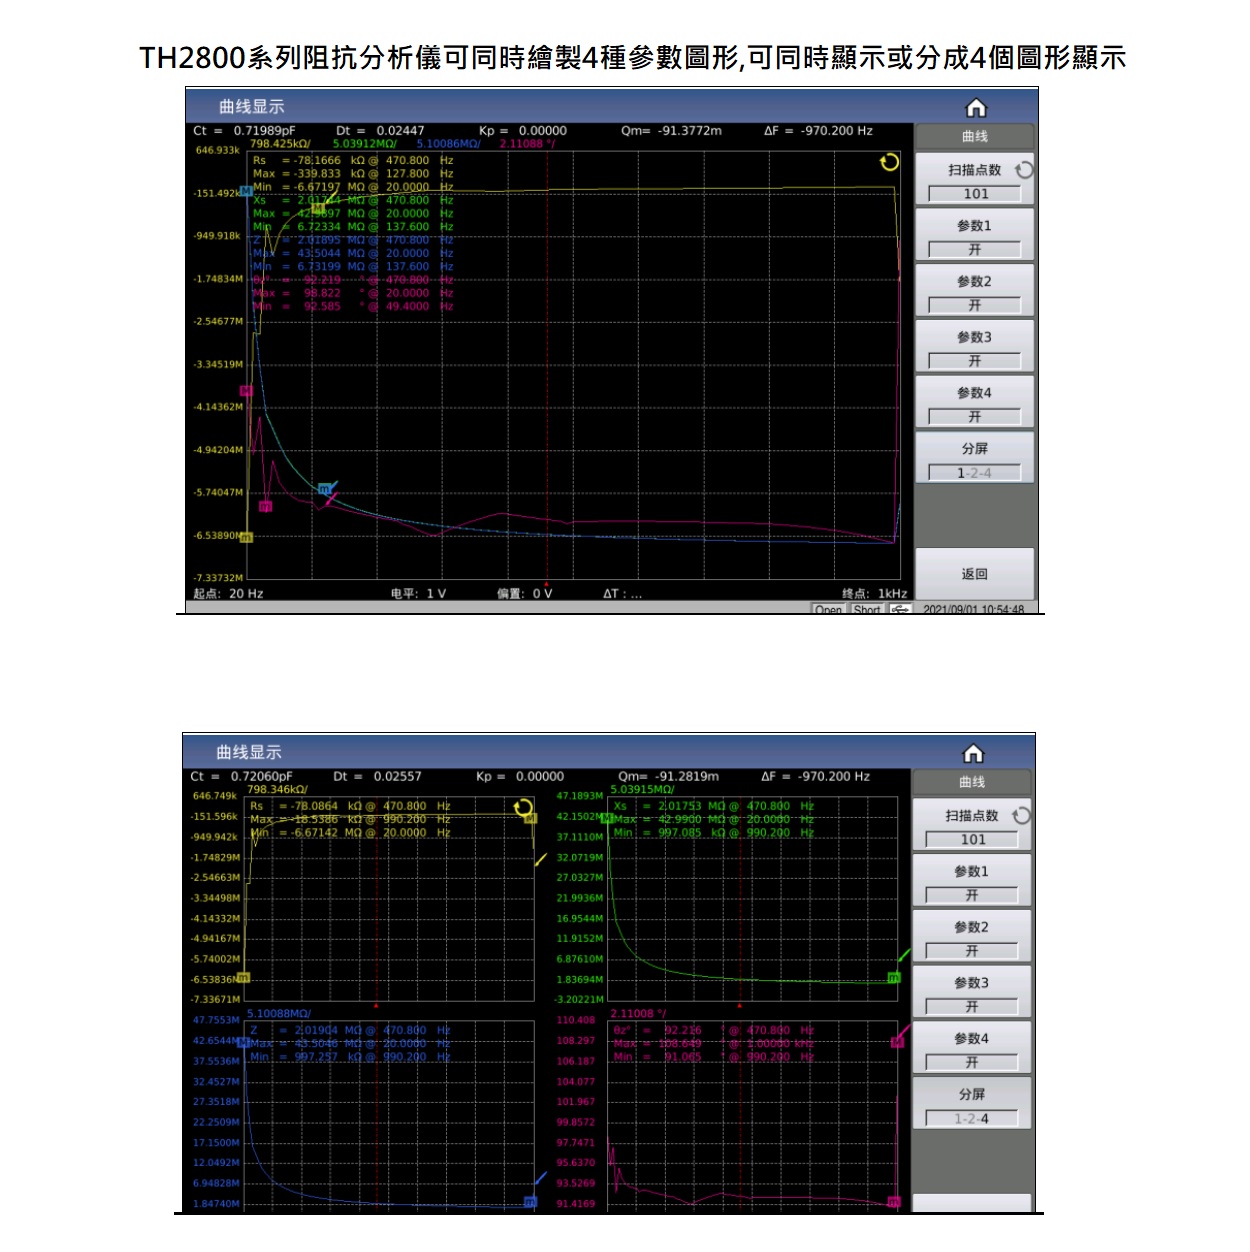 TH2840A 自動元件分析儀圖形繪製功能及分割螢幕顯示功能